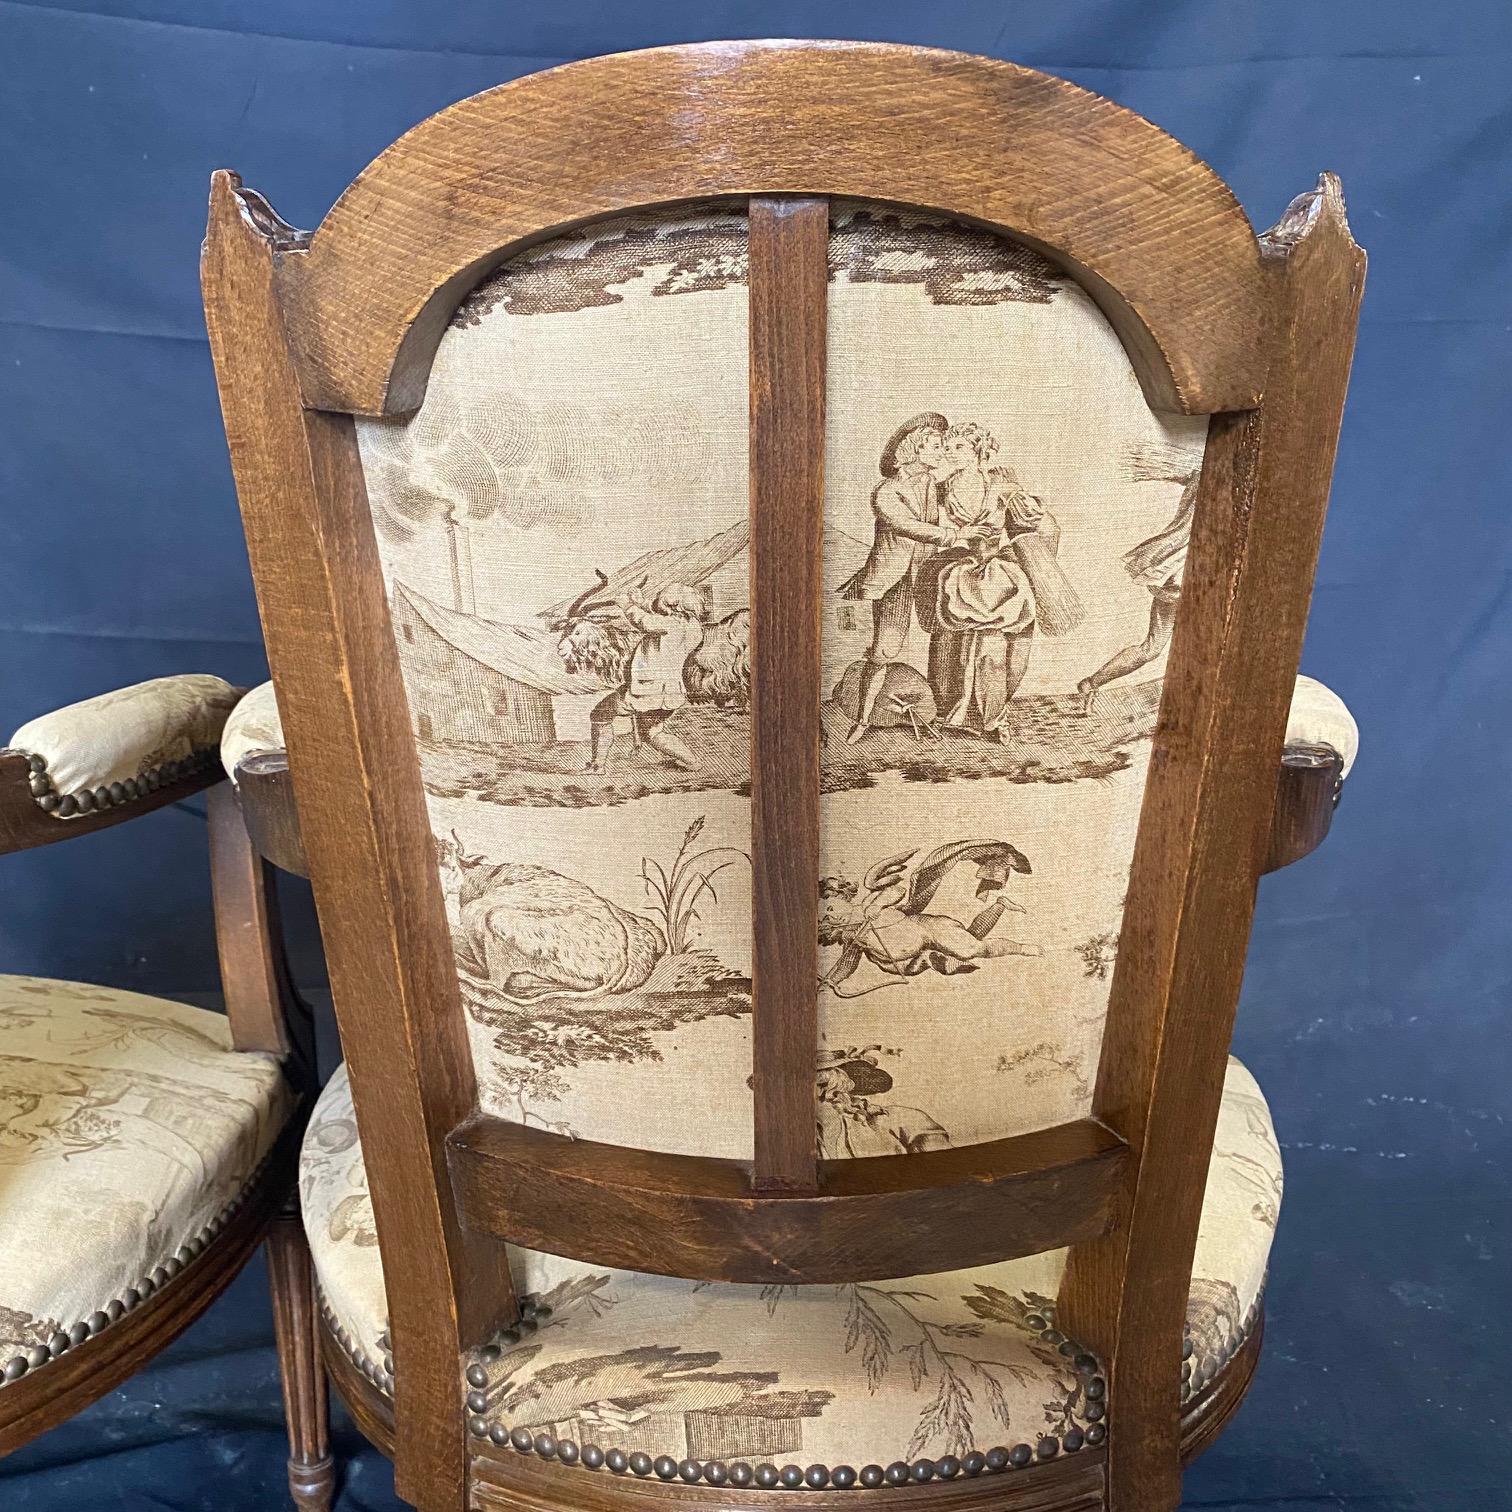 Selten findet man originale Polsterungen in so gutem Zustand wie bei diesen herrlichen frühen französischen Toile-Sesseln oder Fauteuils.  Diese eleganten Louis-XVI-Sessel aus Nussbaumholz, die im 19. Jahrhundert hergestellt wurden, verleihen jedem